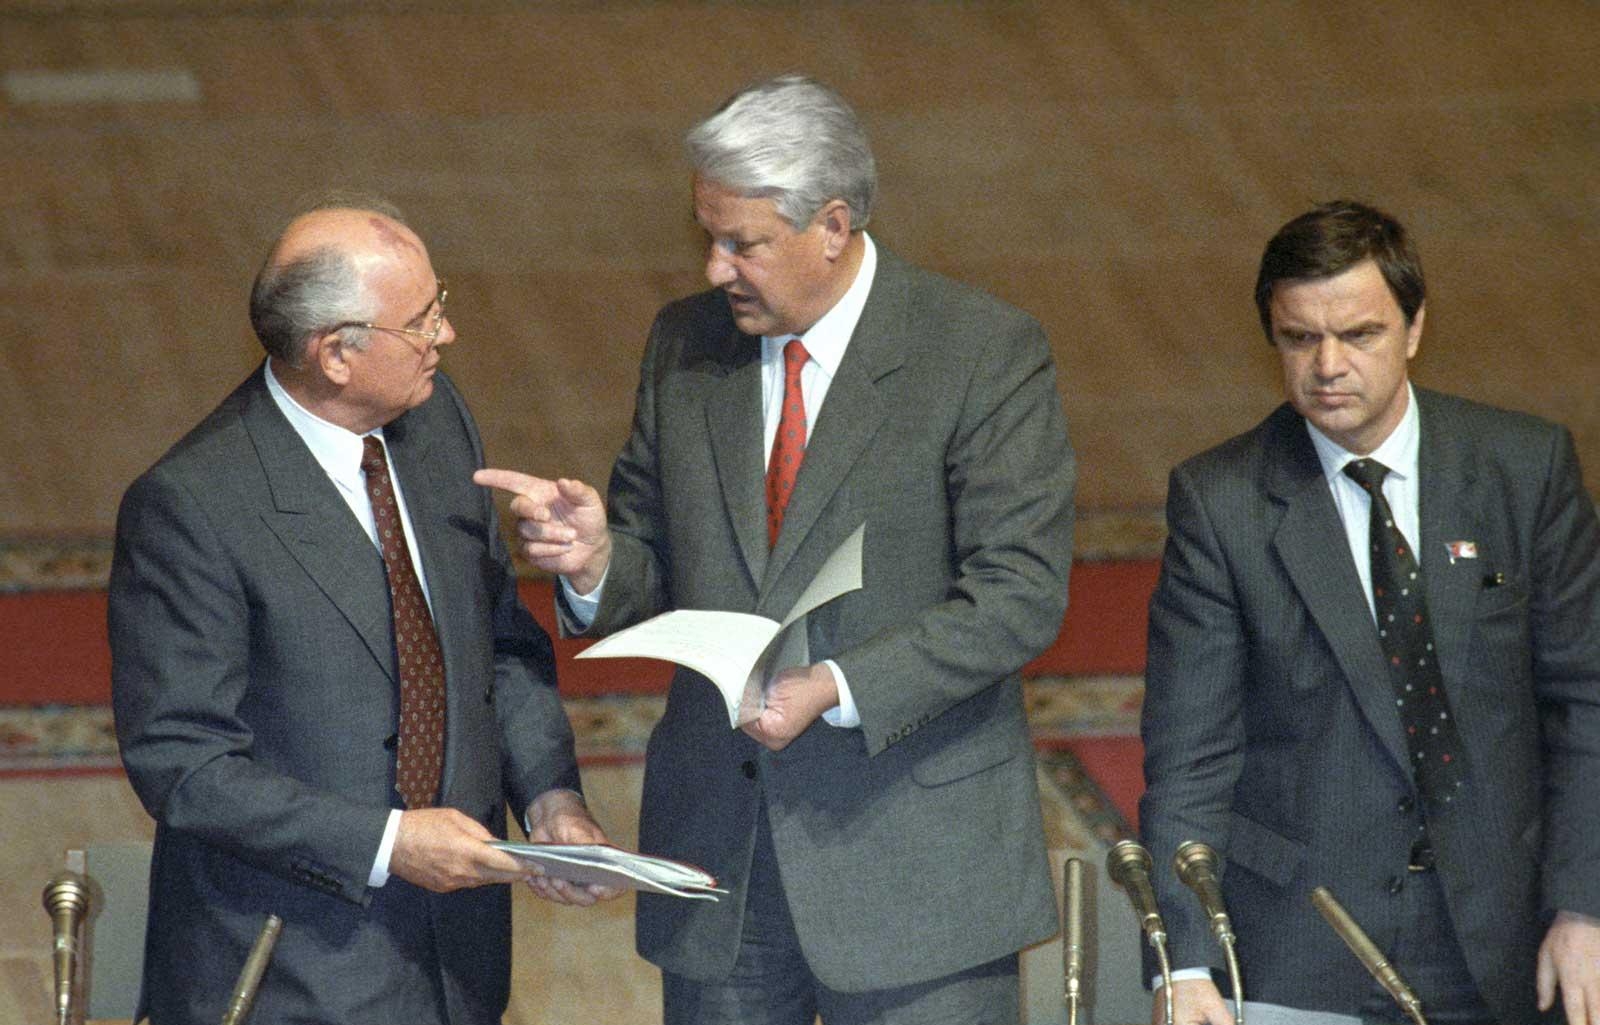 Горбачёв и Ельцин